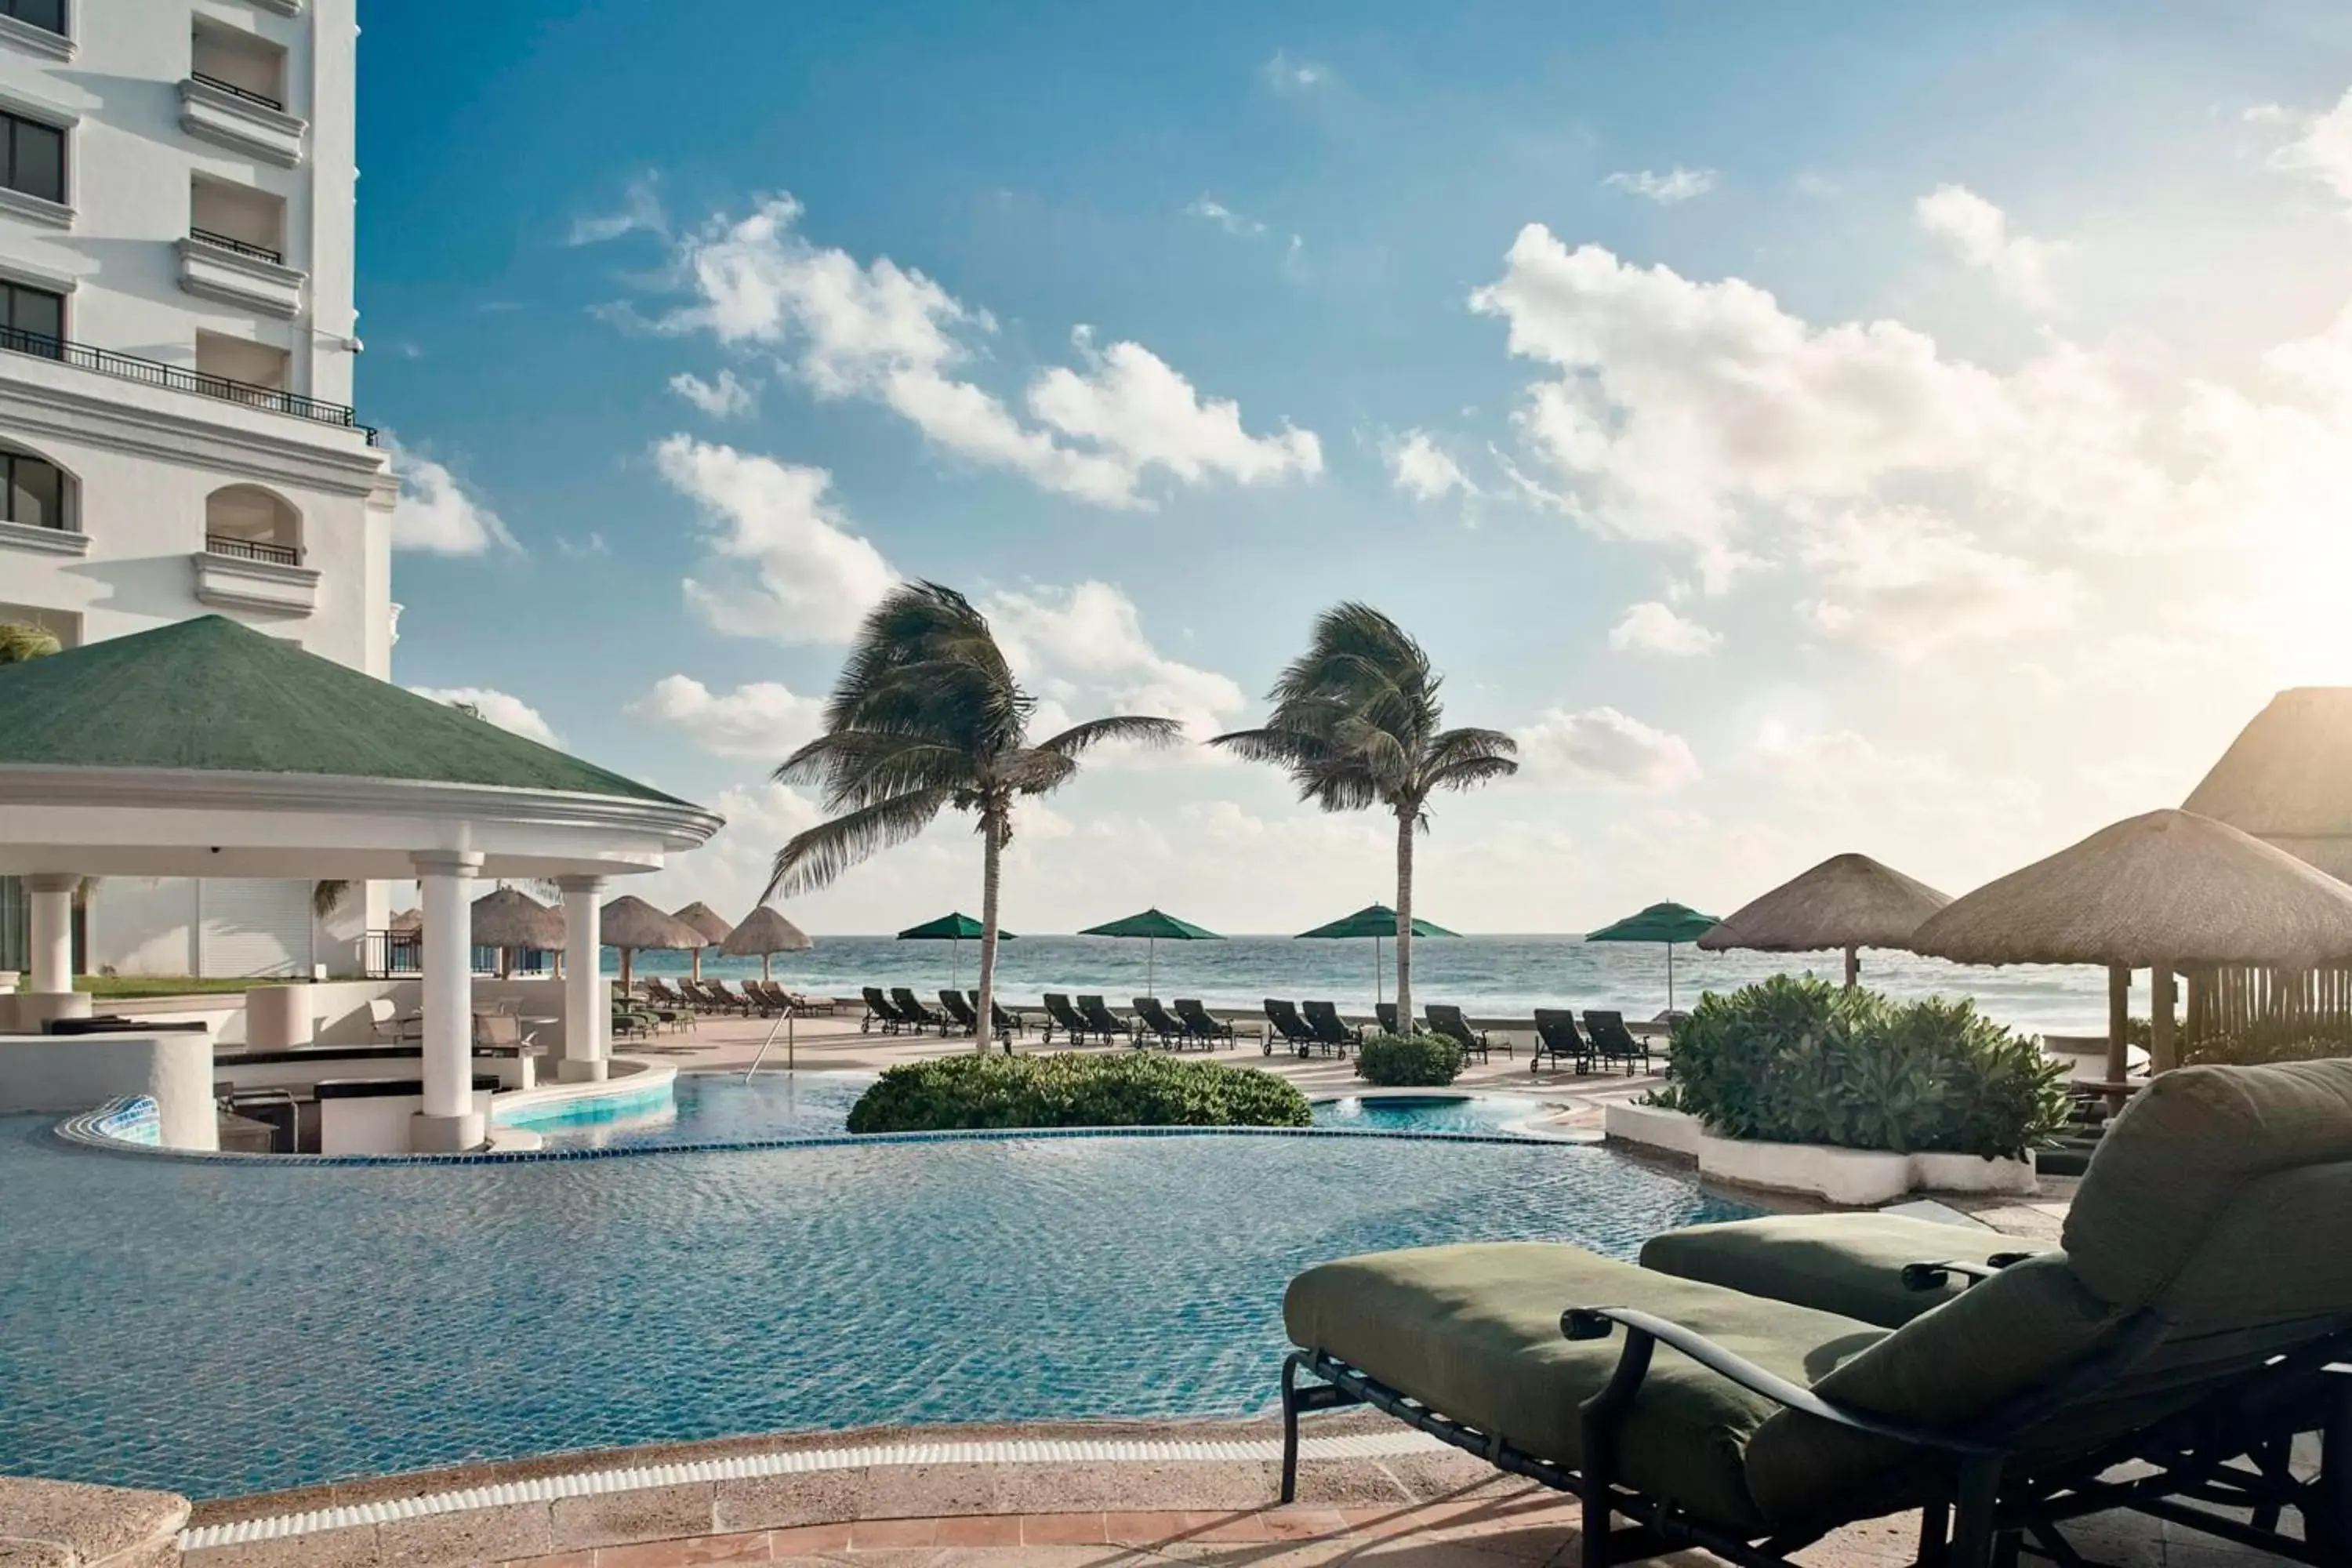 Swimming Pool in JW Marriott Cancun Resort & Spa